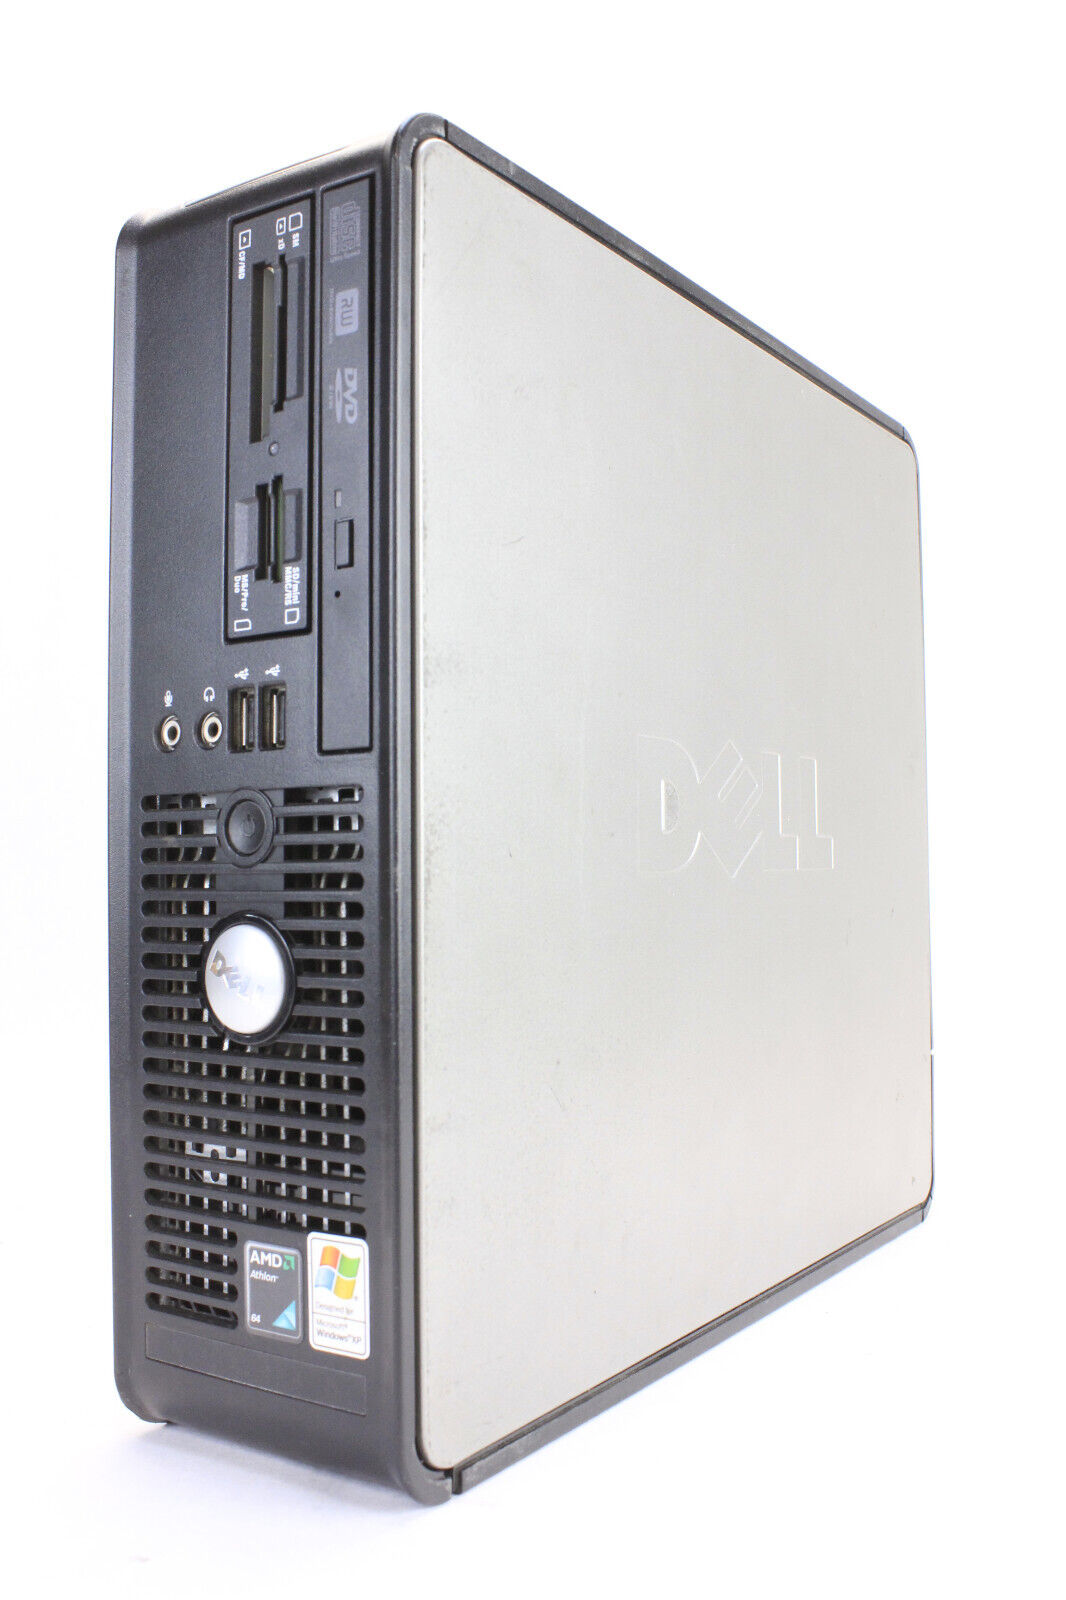 Dell OptiPlex 740 AMD Athlon 64 X2 5600+ 2.8GHz 2GB Ram No HDD/No OS